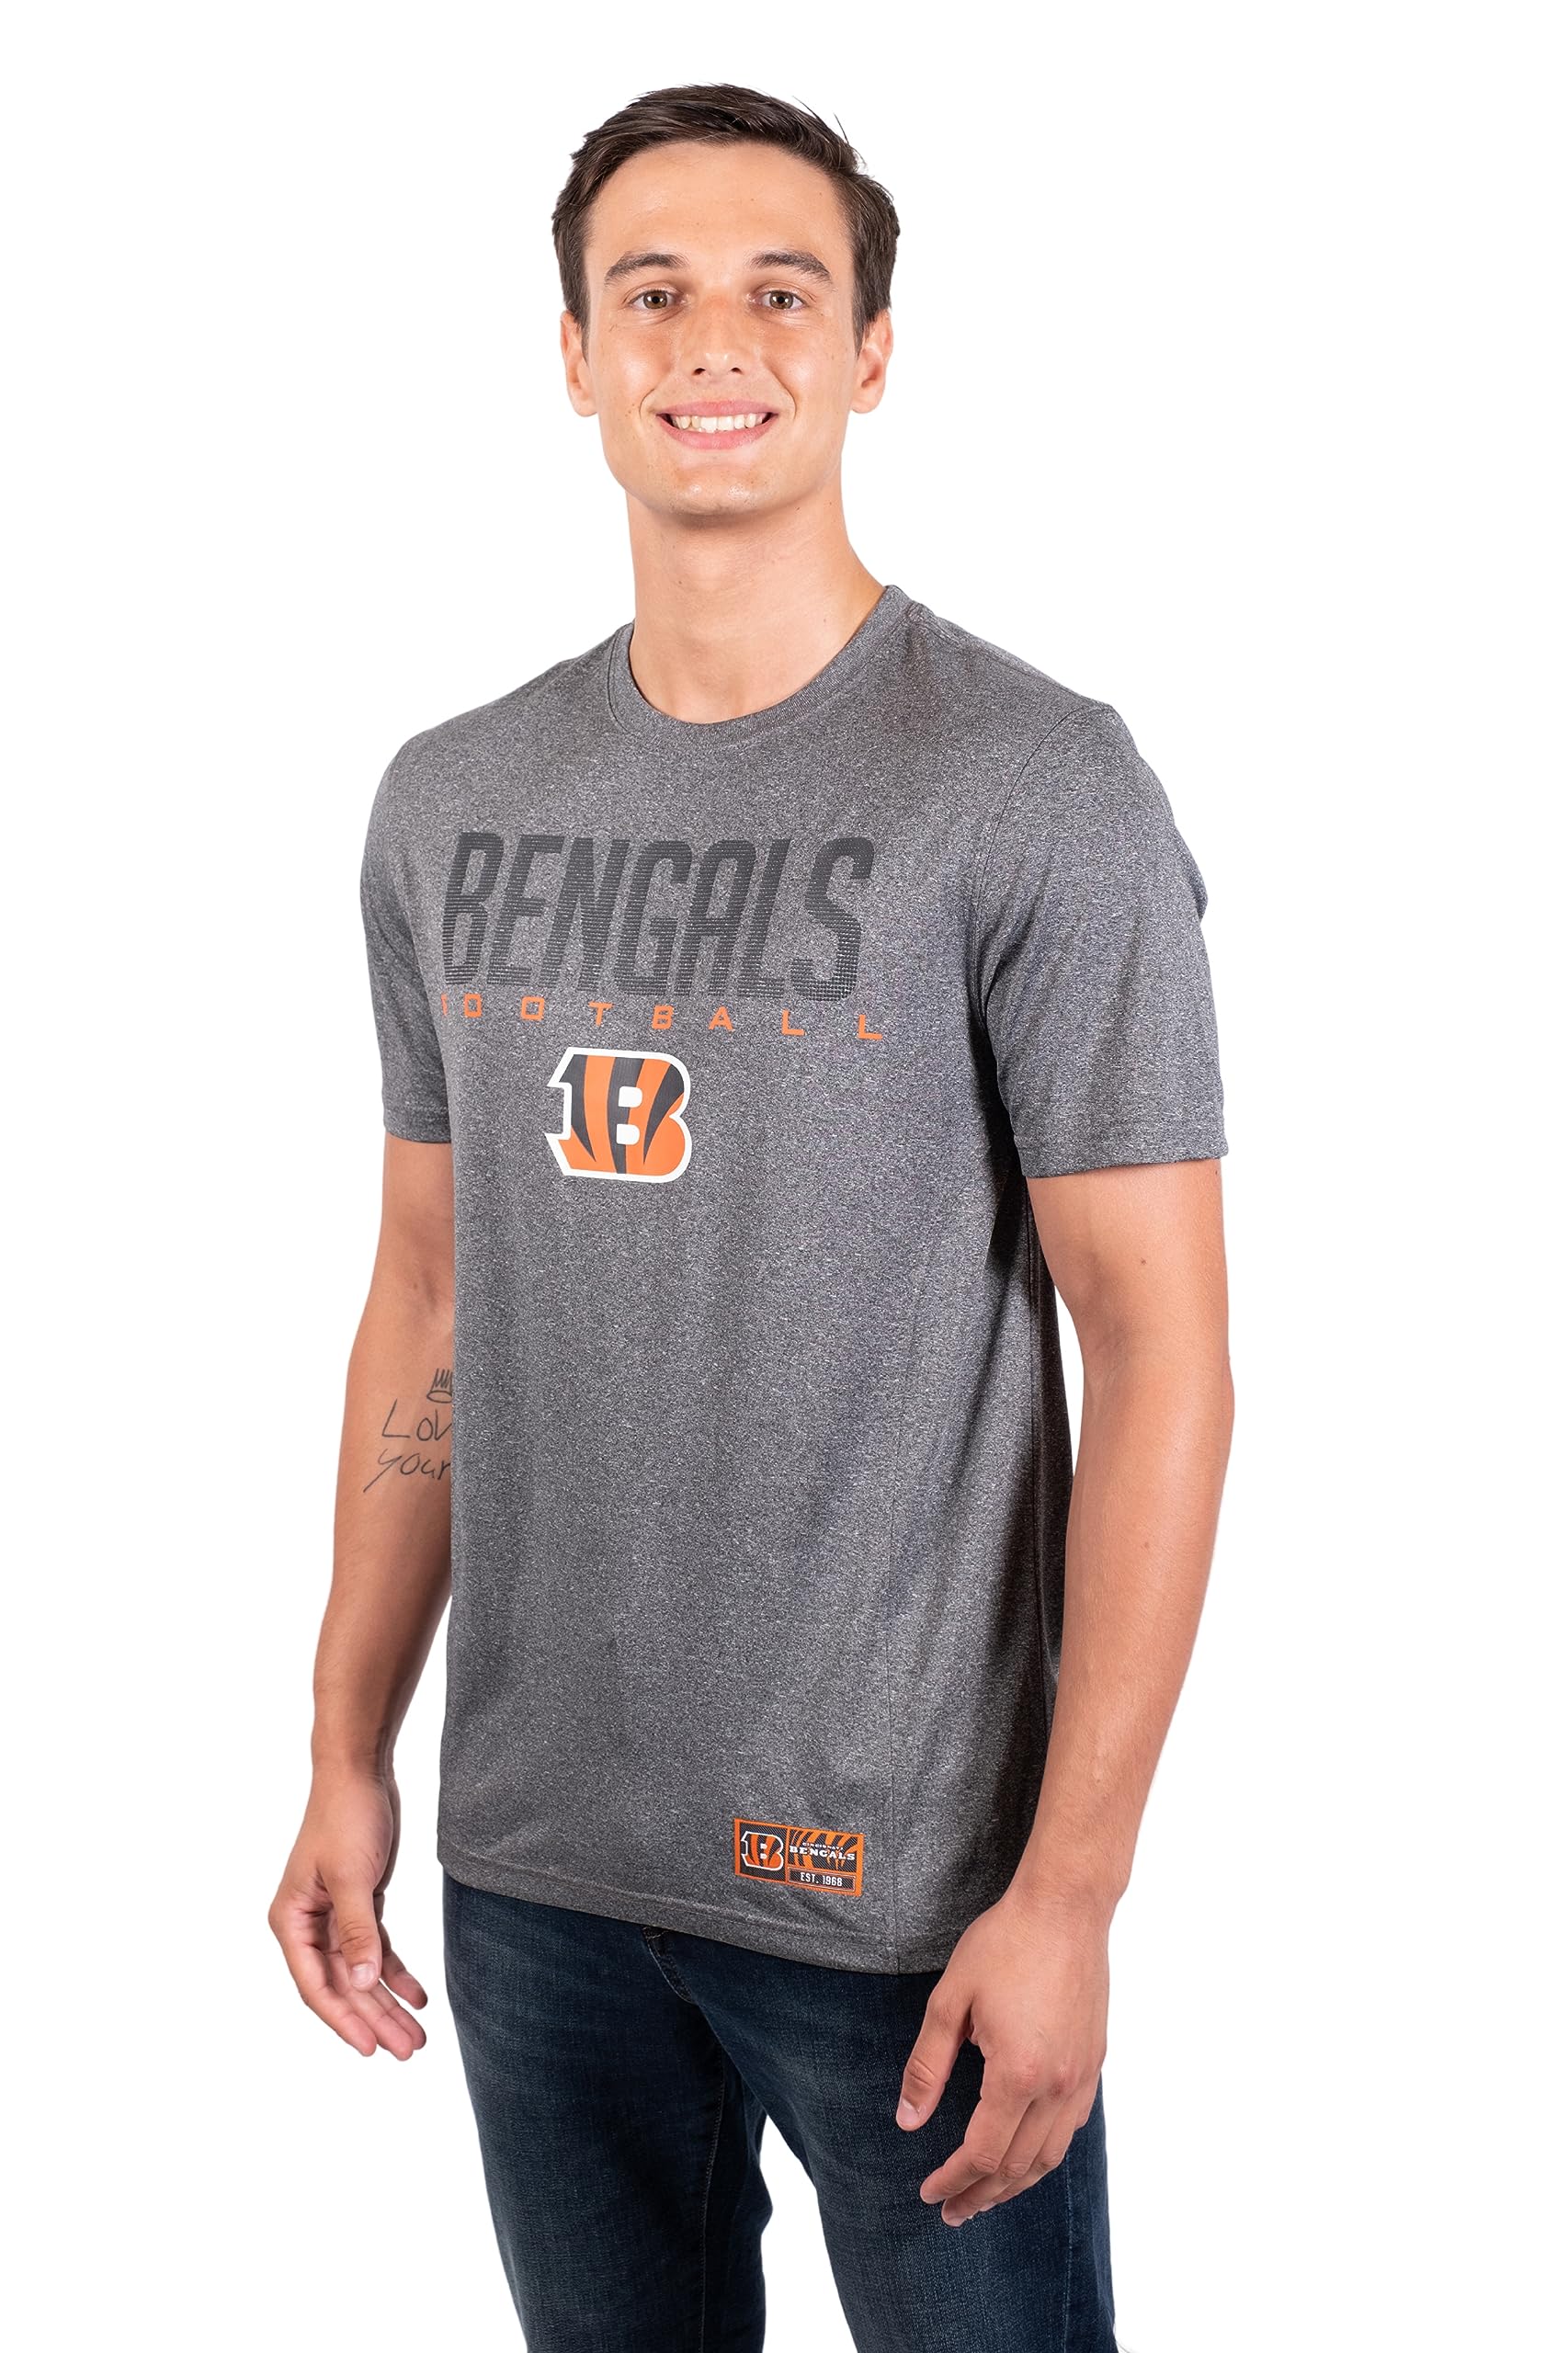 Ultra Game NFL Cincinnati Bengals Mens Super Soft Ultimate Game Day T-Shirt|Cincinnati Bengals